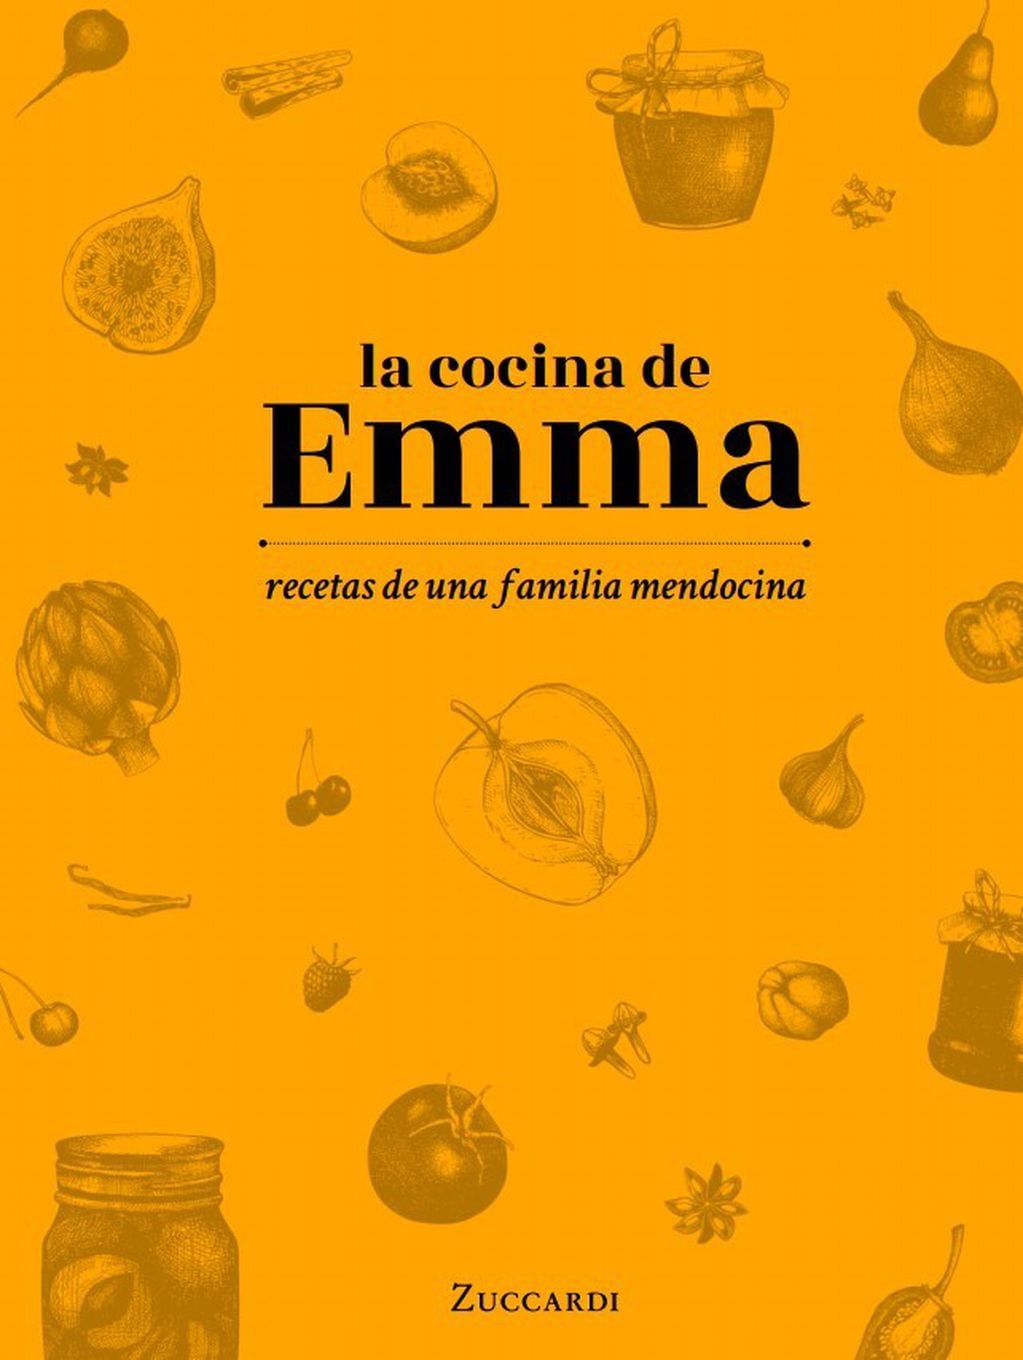 Las recetas de Emma